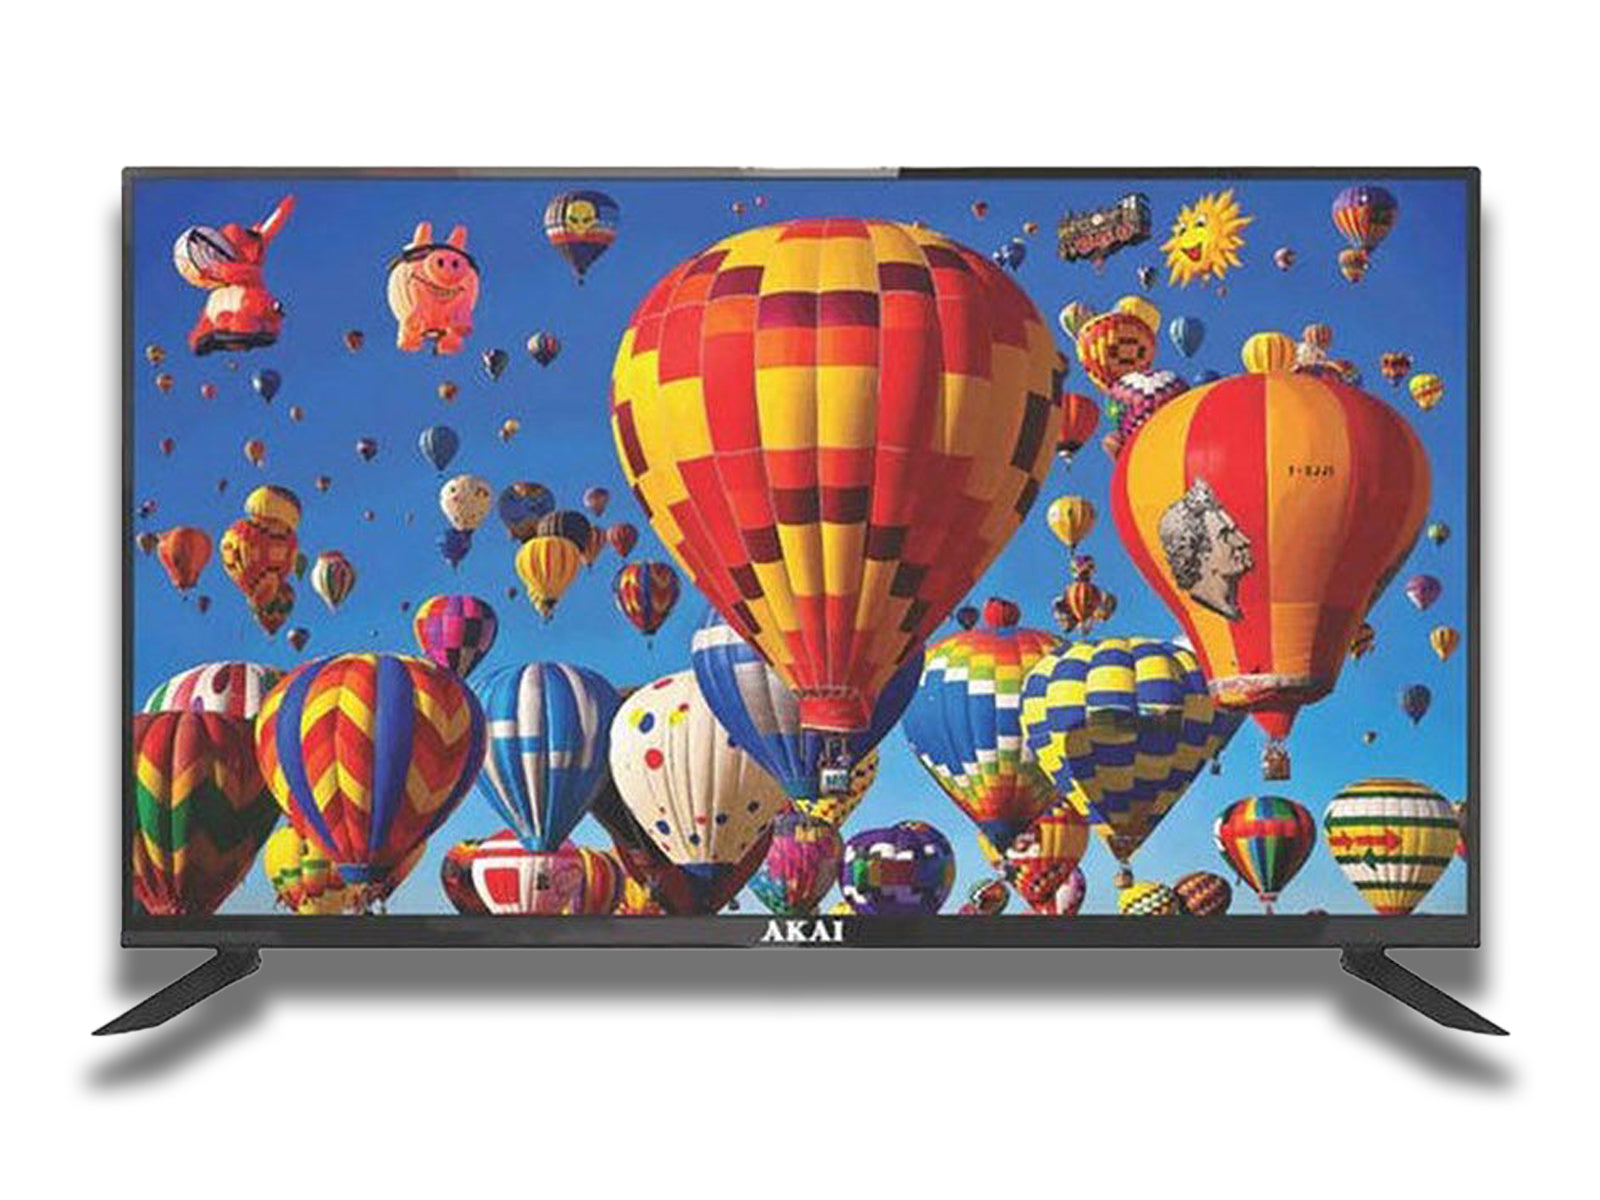 AKAI 39-inch Smart TV